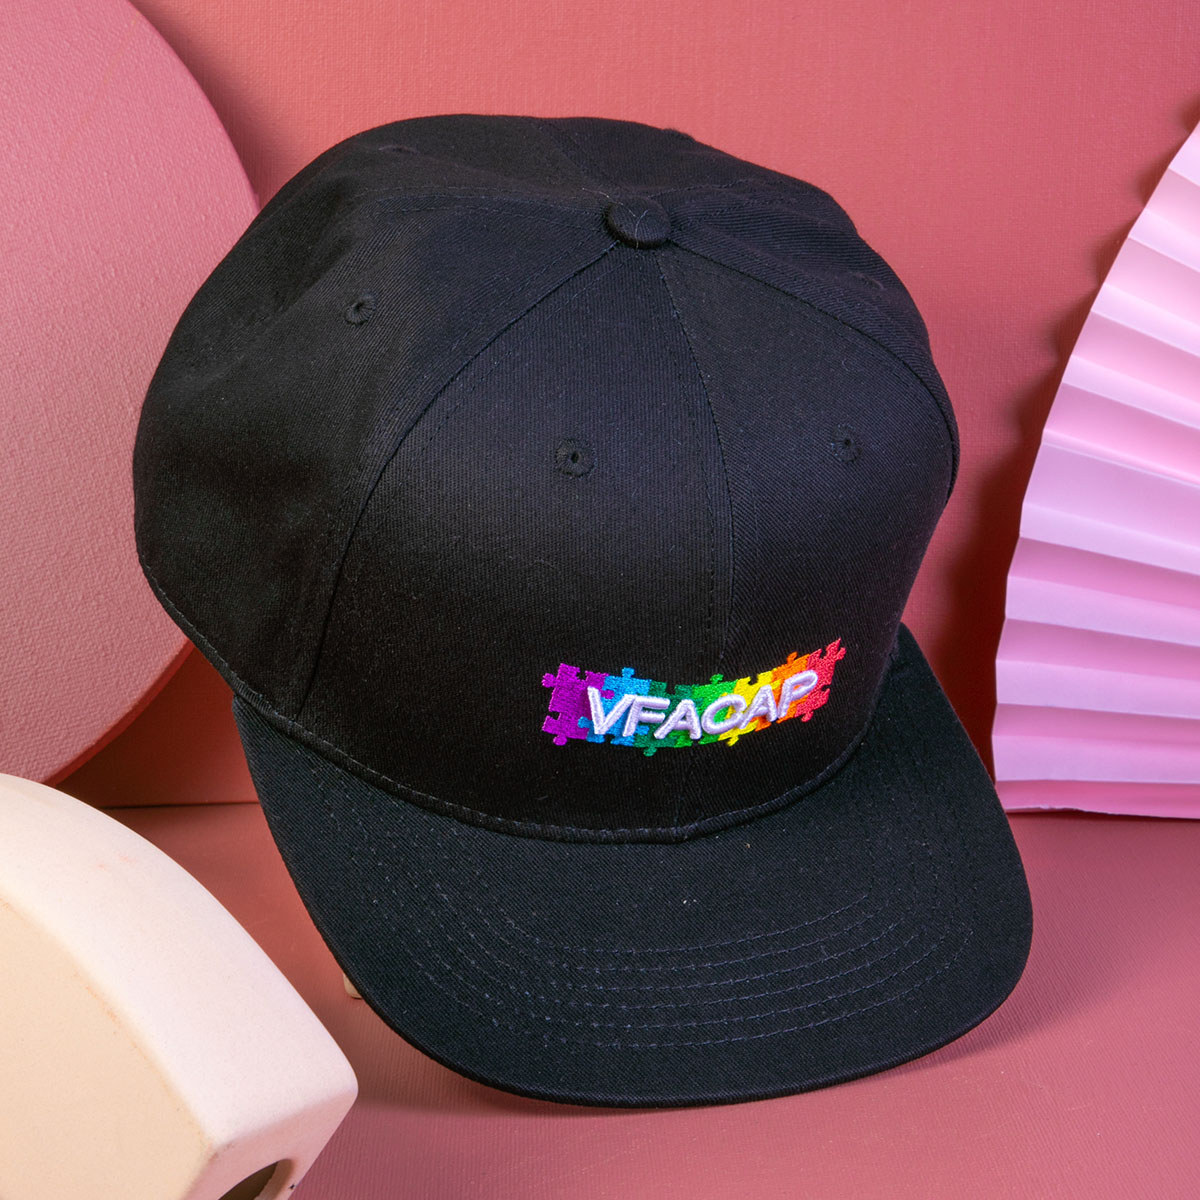 تصميم خطابات التطريز vfacap مصنع القبعات snapback